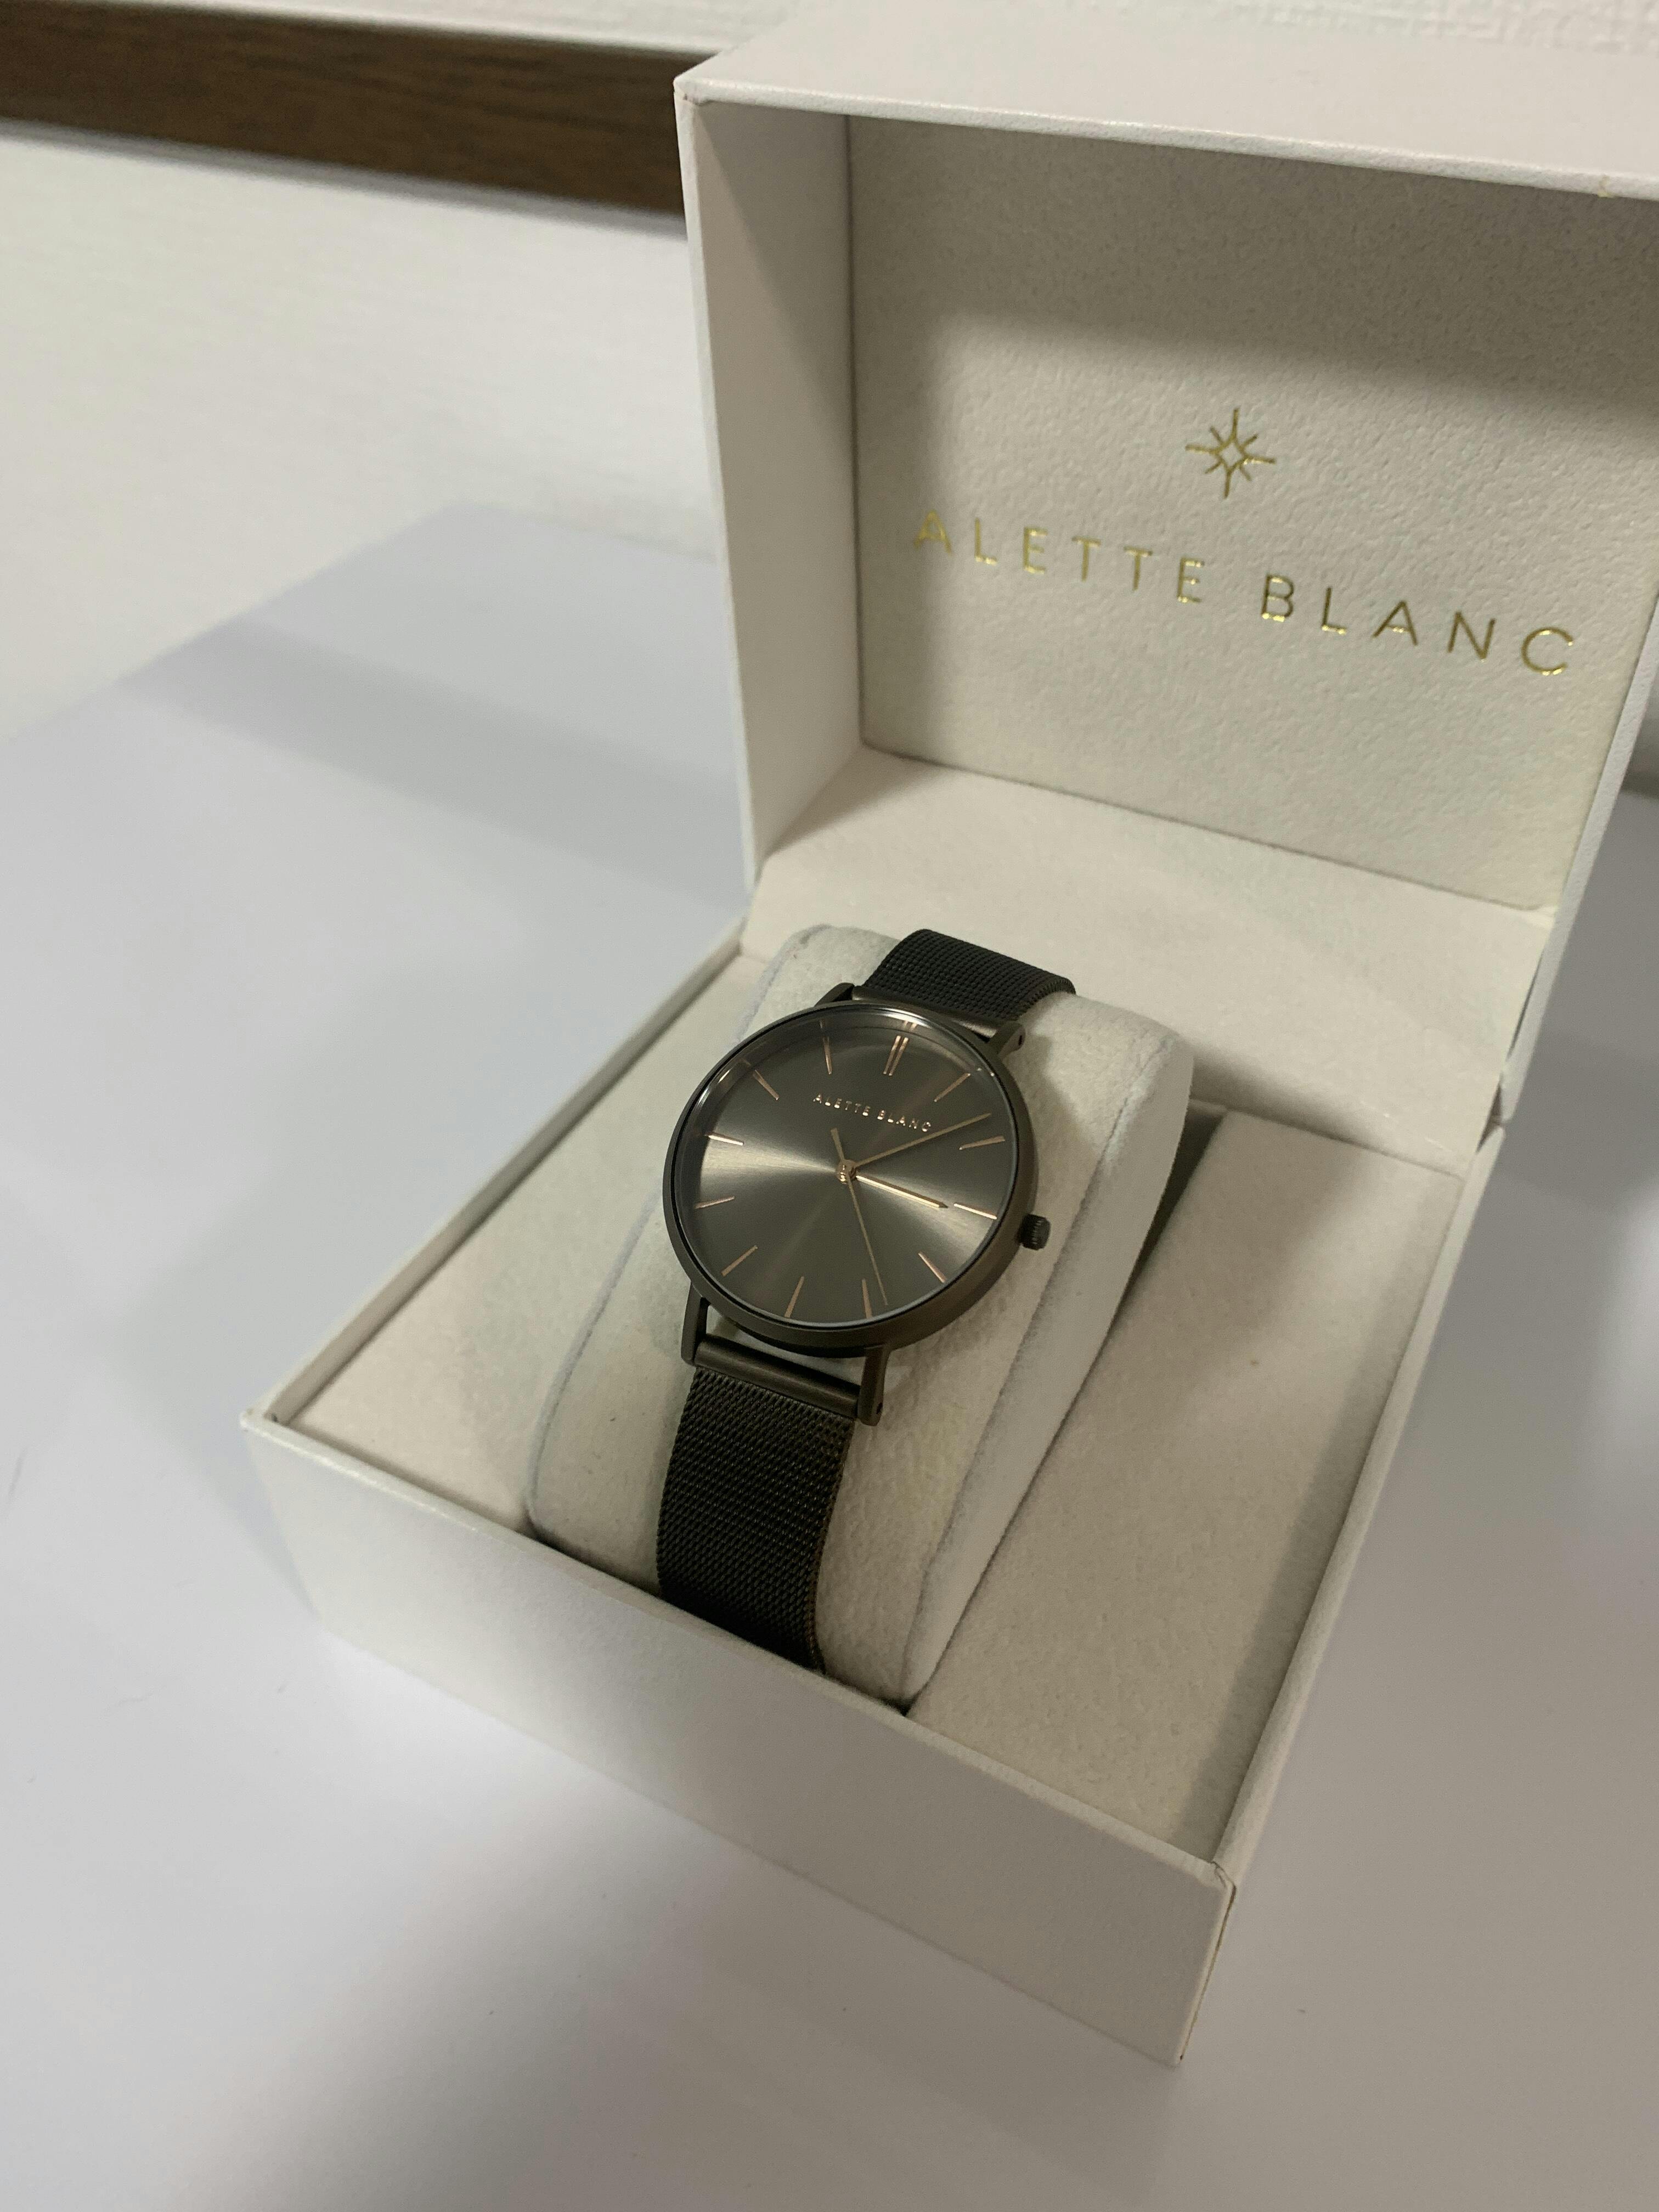 アレットブラン日本公式サイト-【ALETTE BLANC】-レディース 腕時計 – aletteblanc-jp